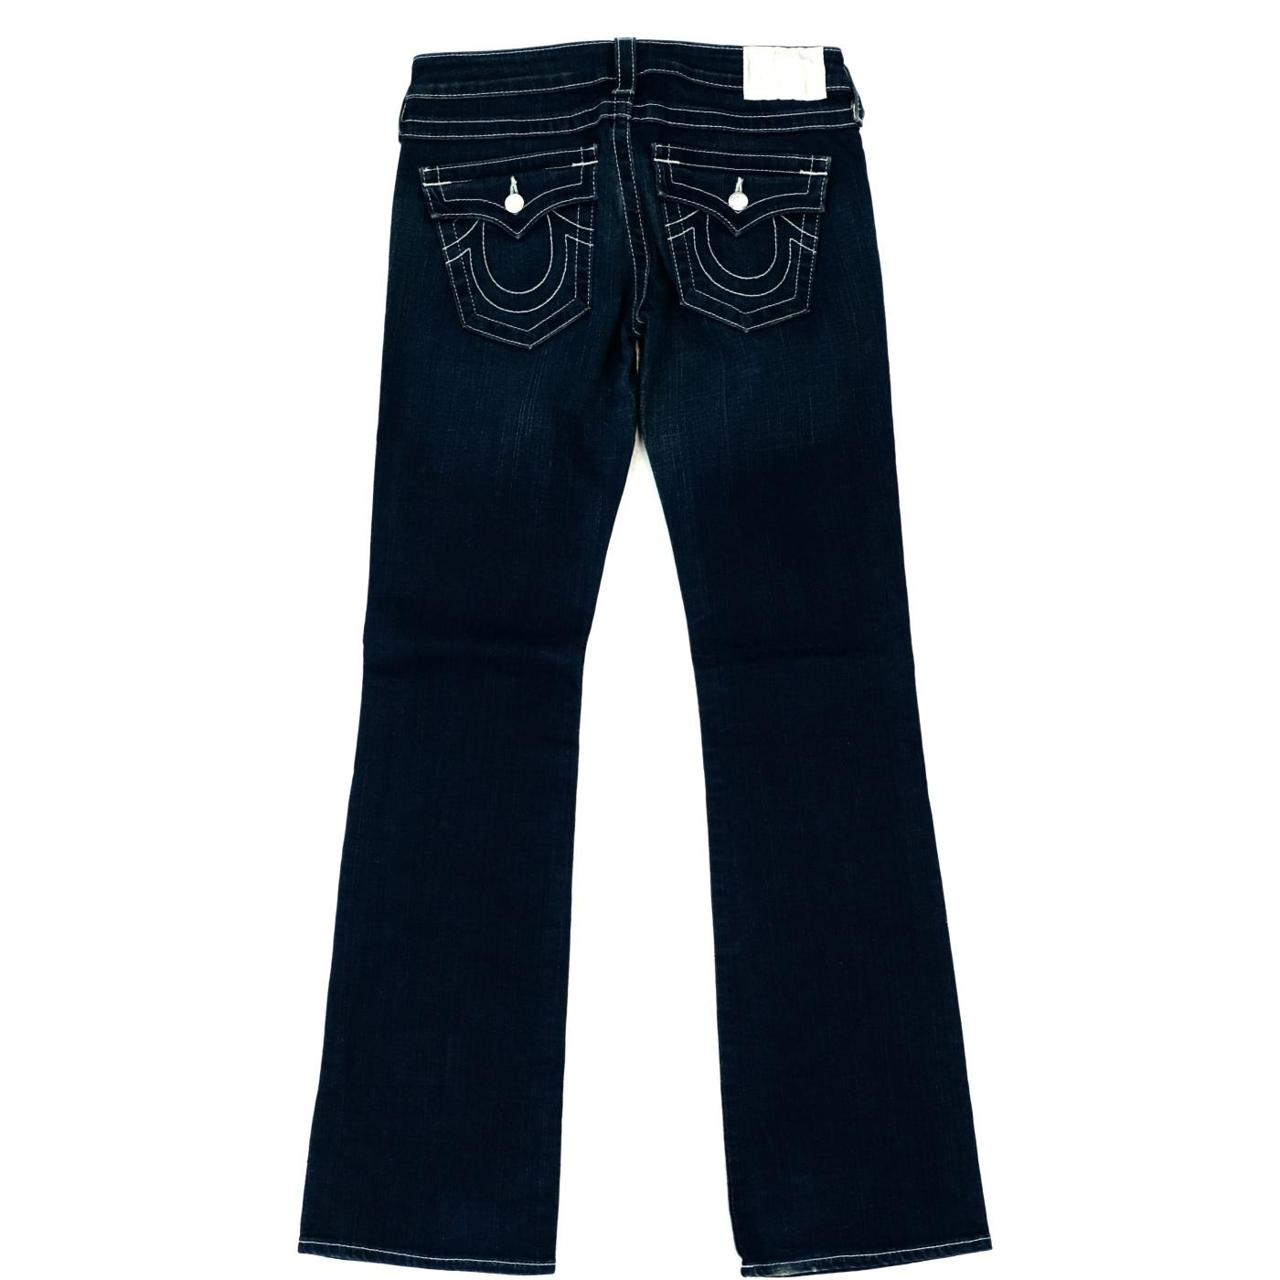 Vintage True Religion jeans Original Y2K True... - Depop